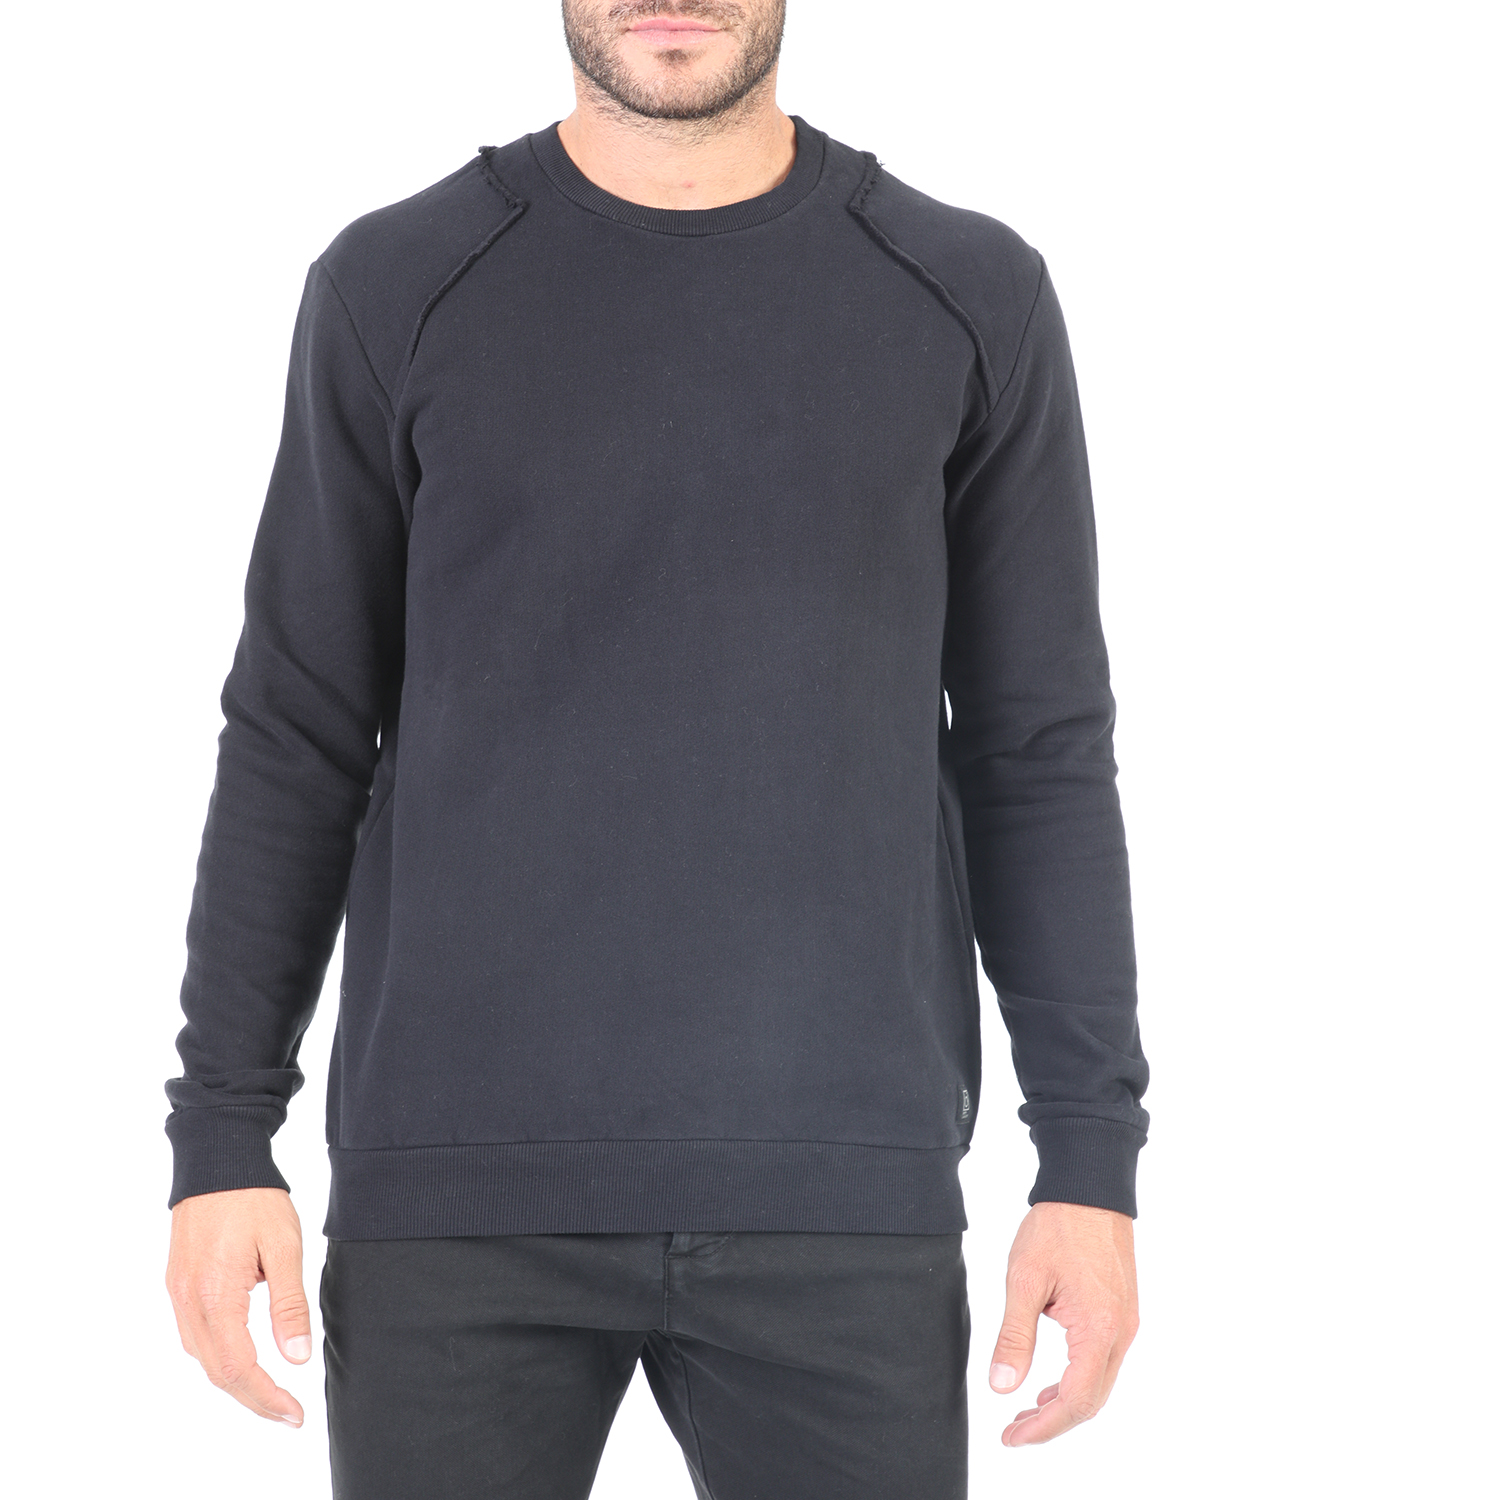 Ανδρικά/Ρούχα/Φούτερ/Μπλούζες DIRTY LAUNDRY - Ανδρική μπλούζα φούτερ DIRTY LAUNDRY μαύρη